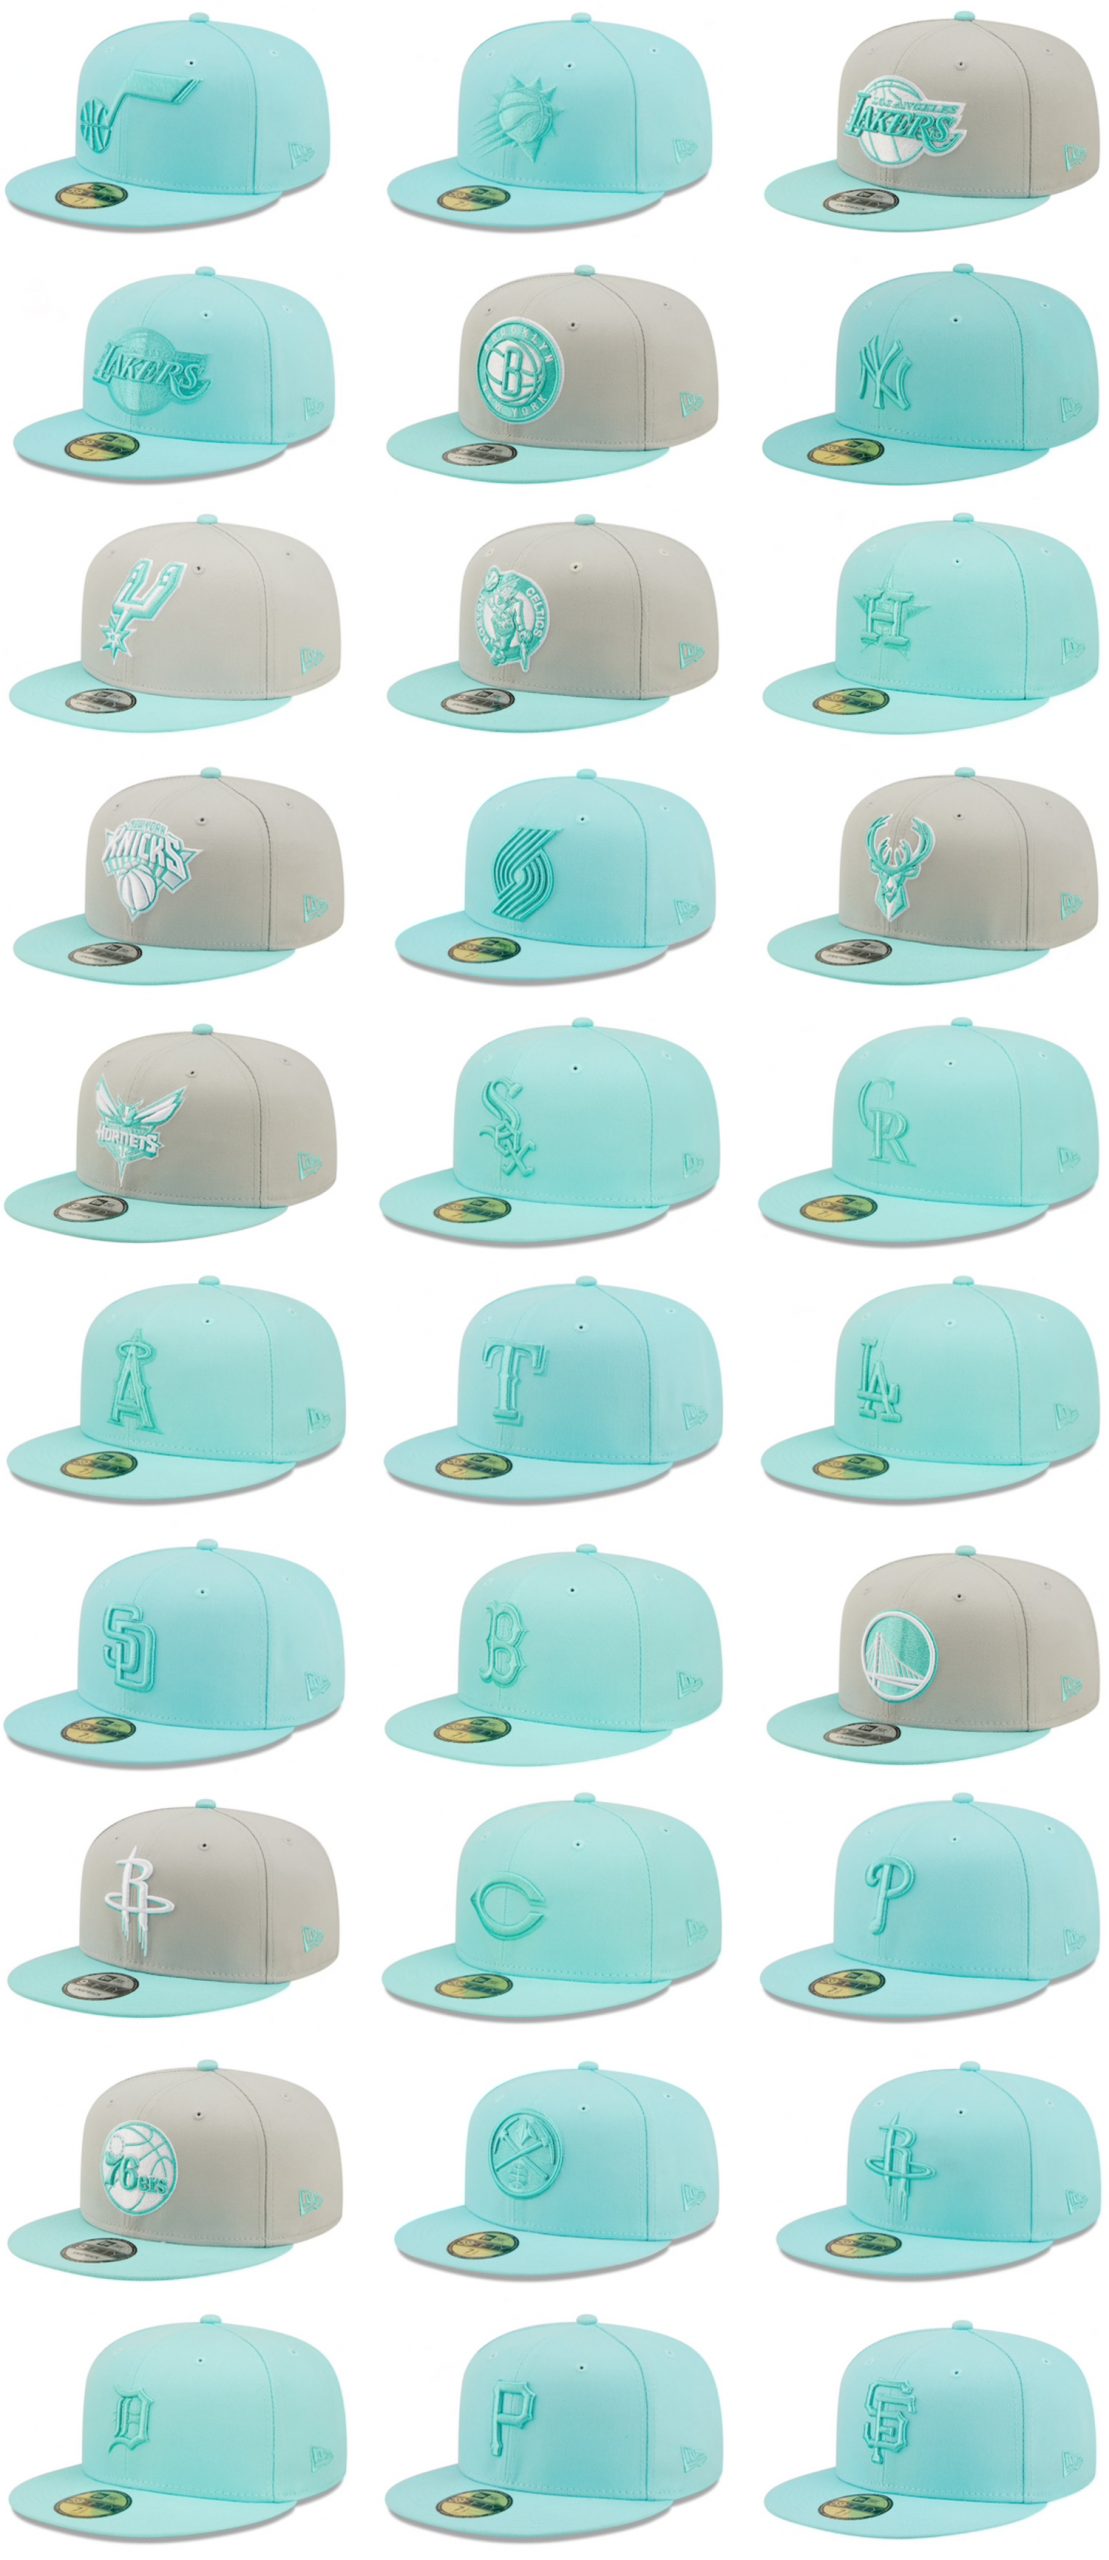 new-era-mint-foam-turquoise-hats